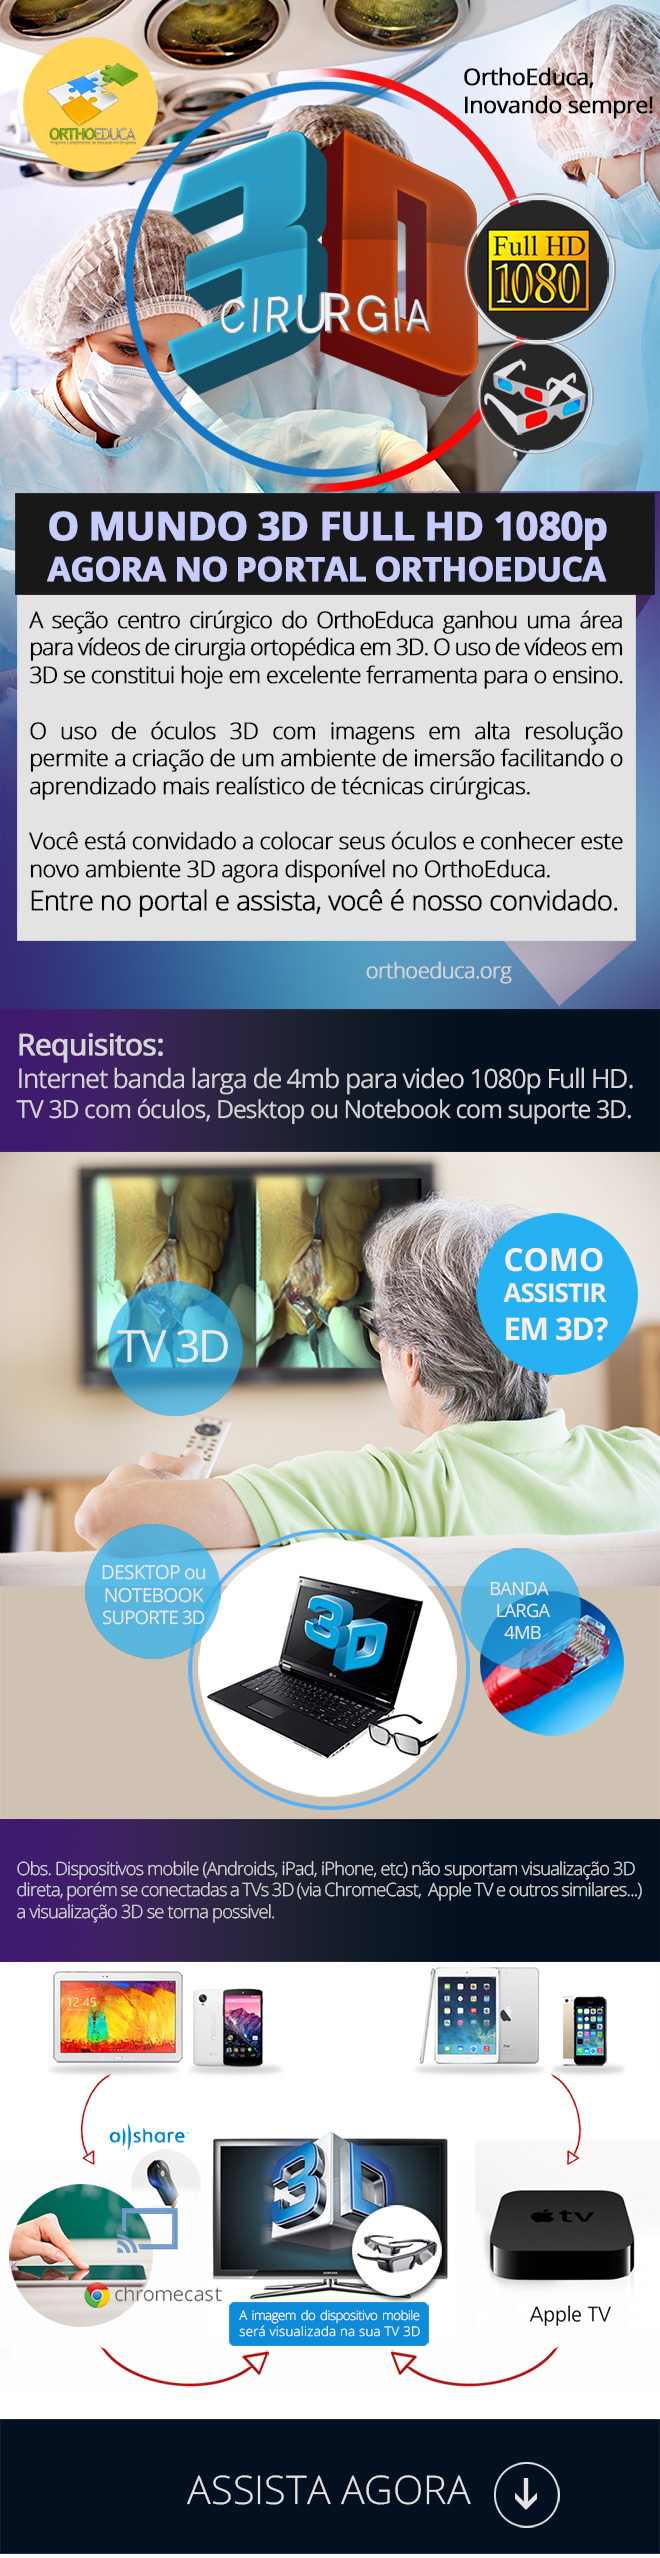 3D Full HD: Vdeos de cirurgia no OrthoEduca